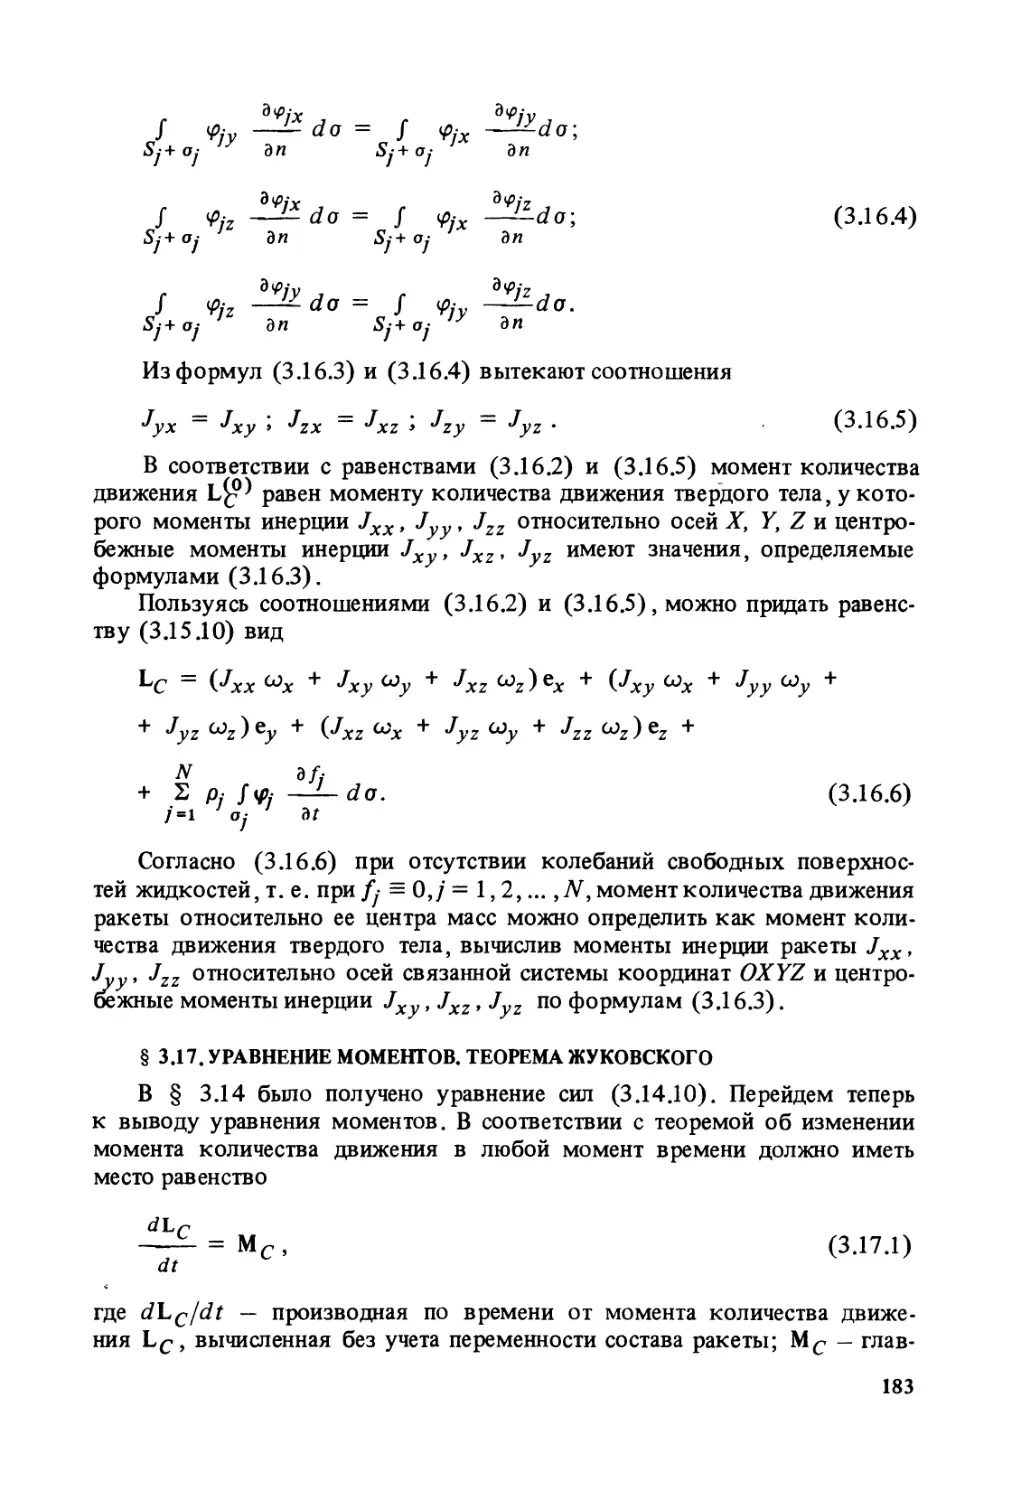 § 3.17. Уравнение моментов. Теорема Жуковского